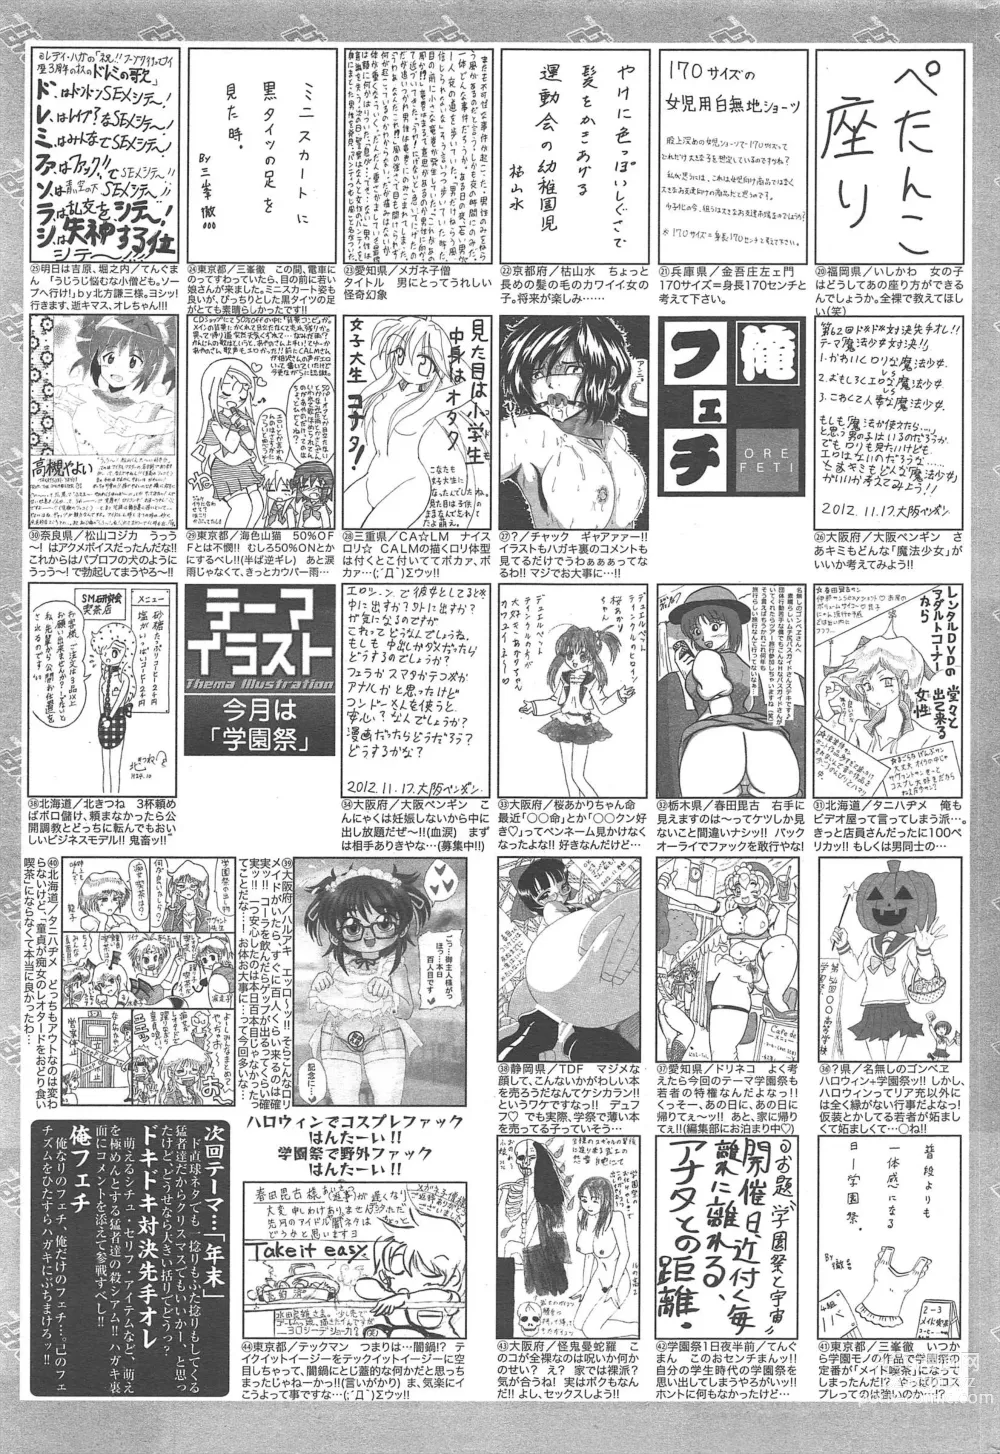 Page 321 of manga Manga Bangaichi 2013-01